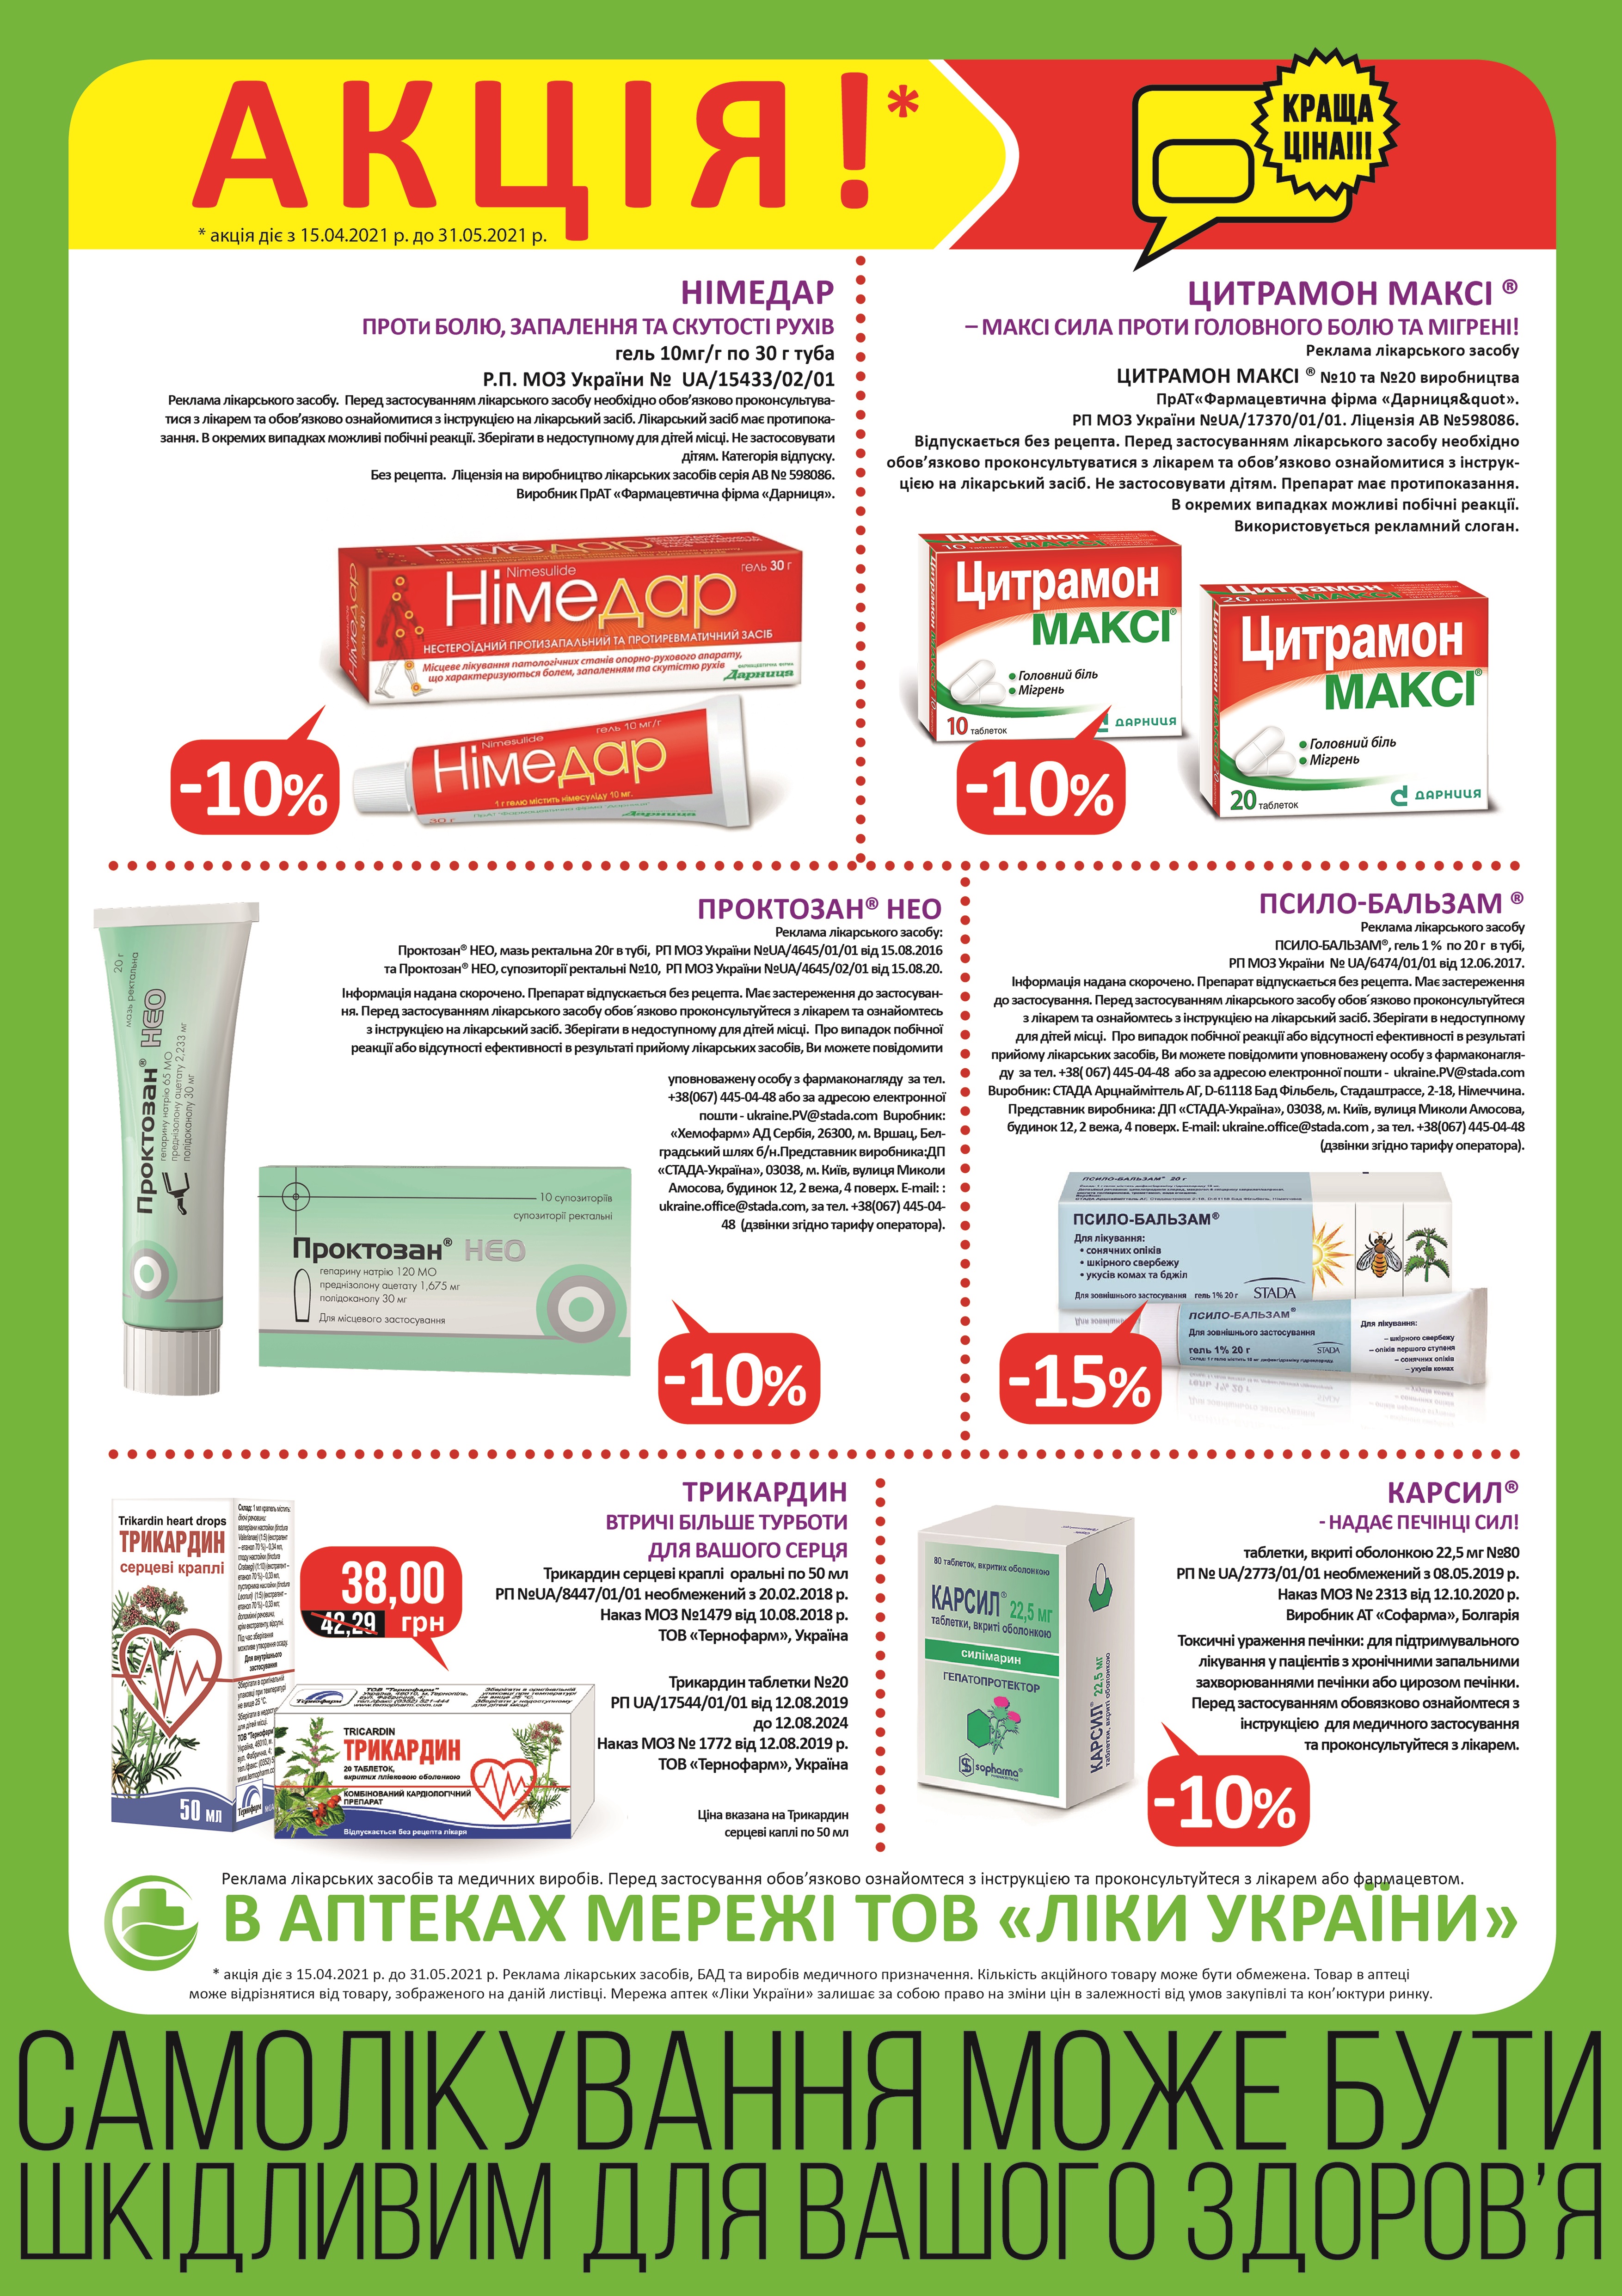 В аптеках мережі ТОВ "Ліки України" з 15.04 по 31.05 діє акція